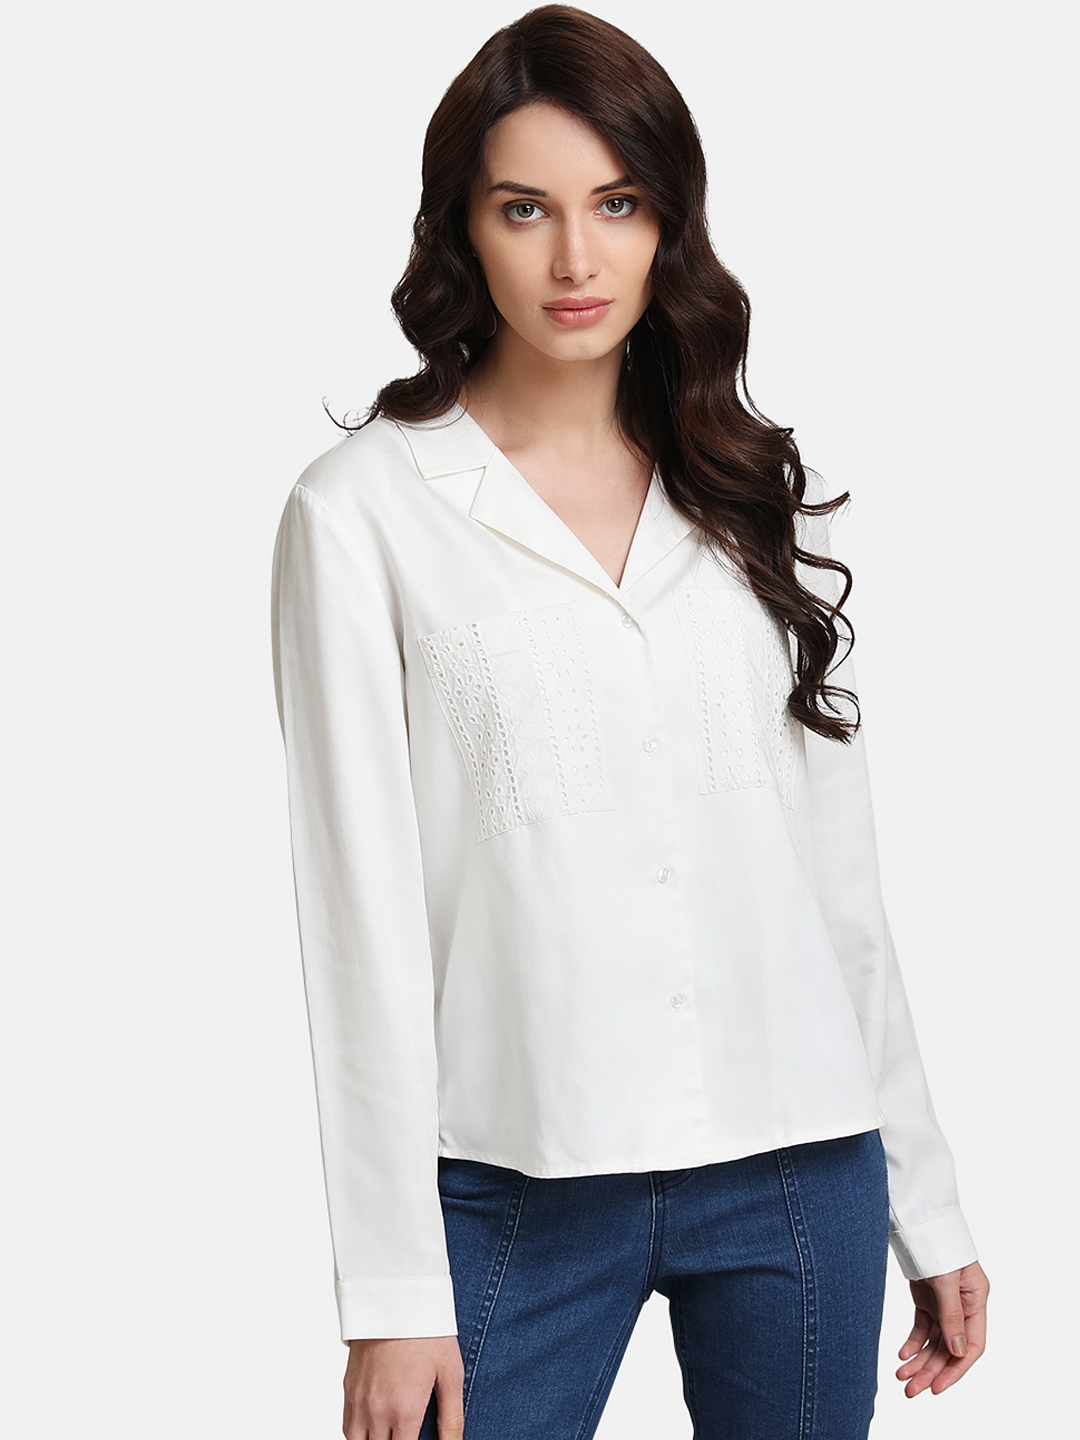 Buy Kazo Women White Regular Fit Solid Casual Shirt Shirts For Women